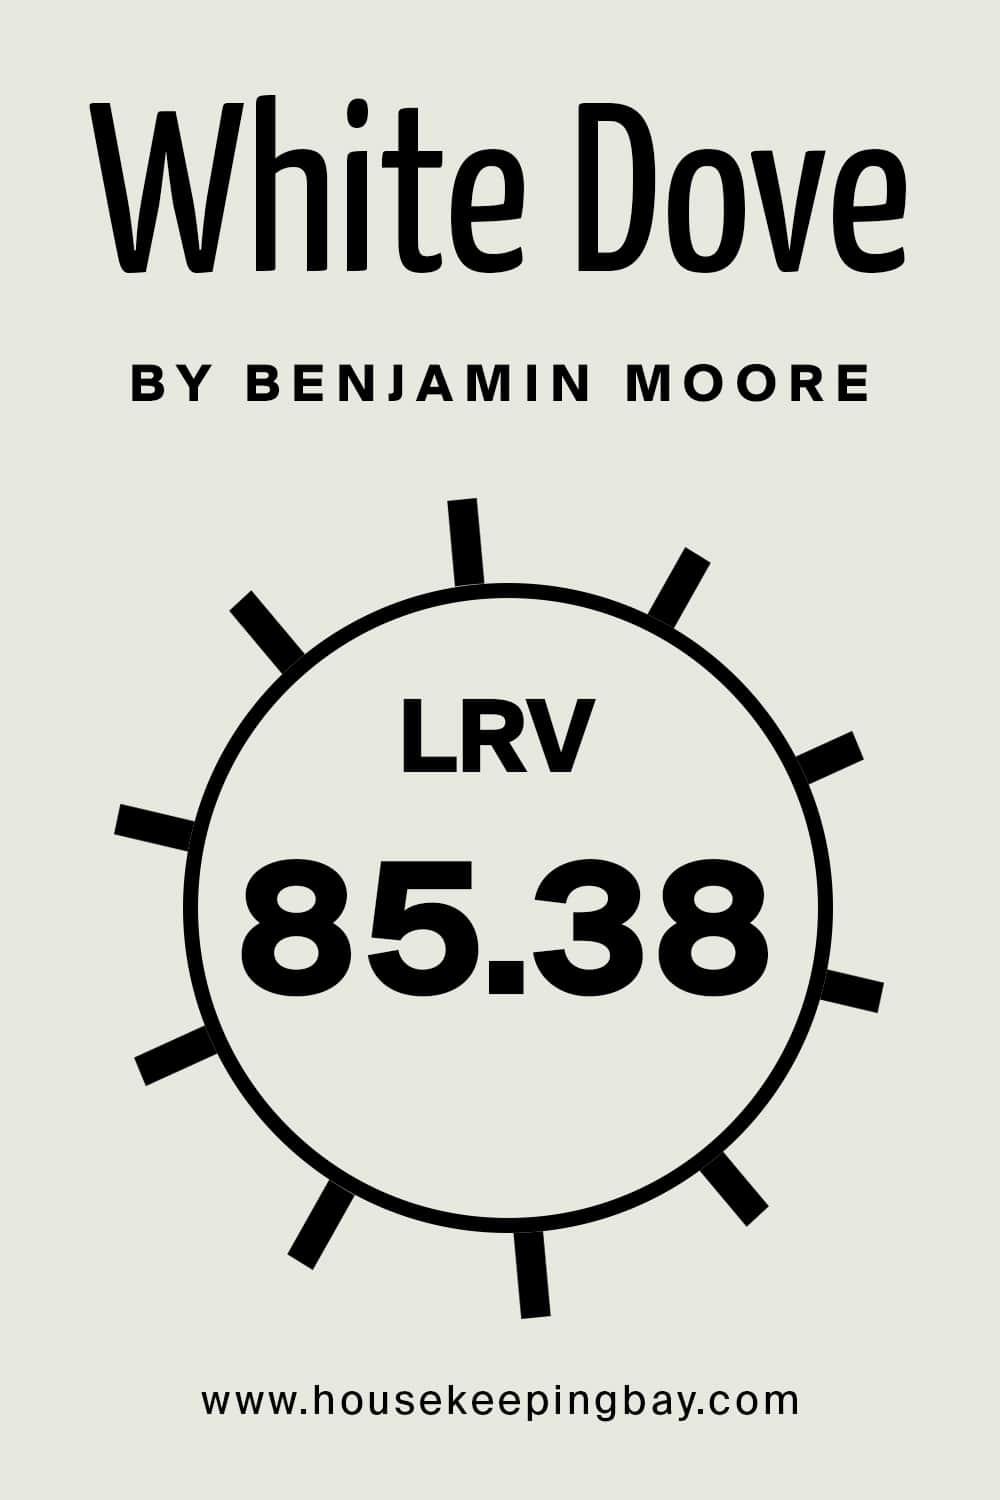 White Dove by Benjamin Moore. LRV – 85.38